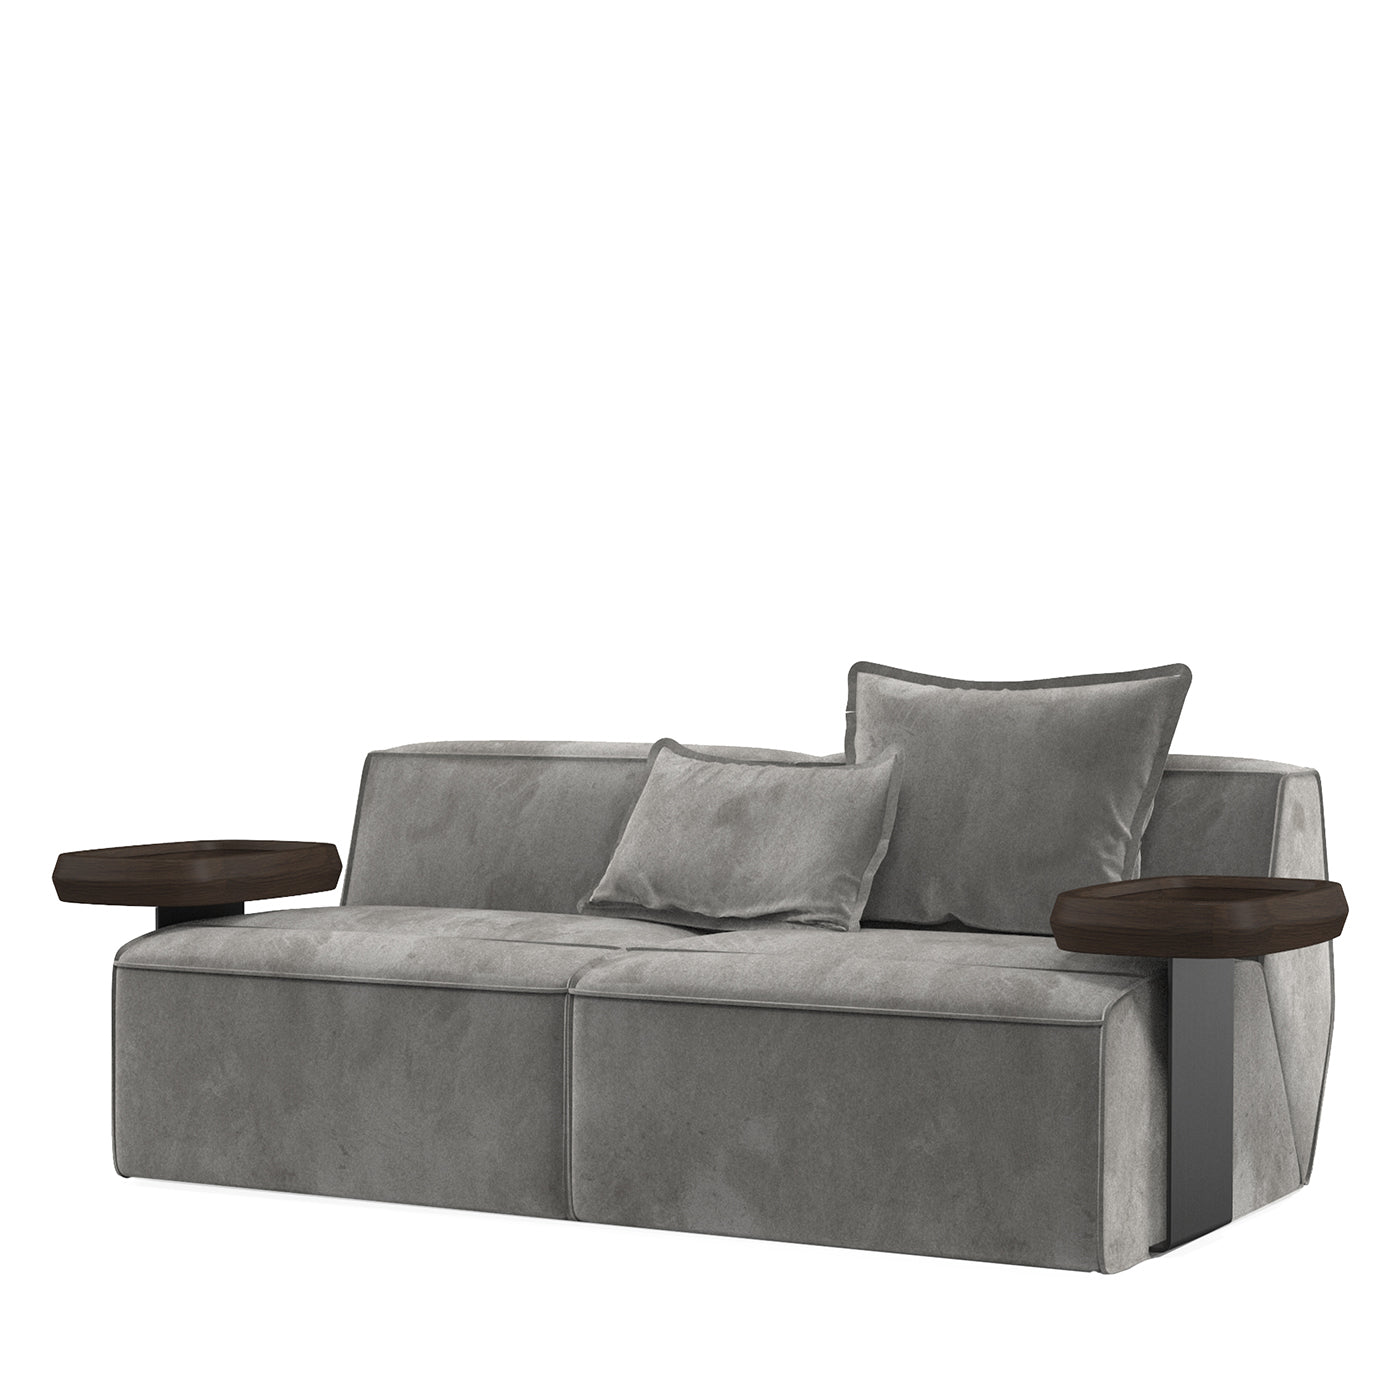 Infinito Kleines graues sofa mit beistelltischen by Lorenza Bozzoli - Hauptansicht